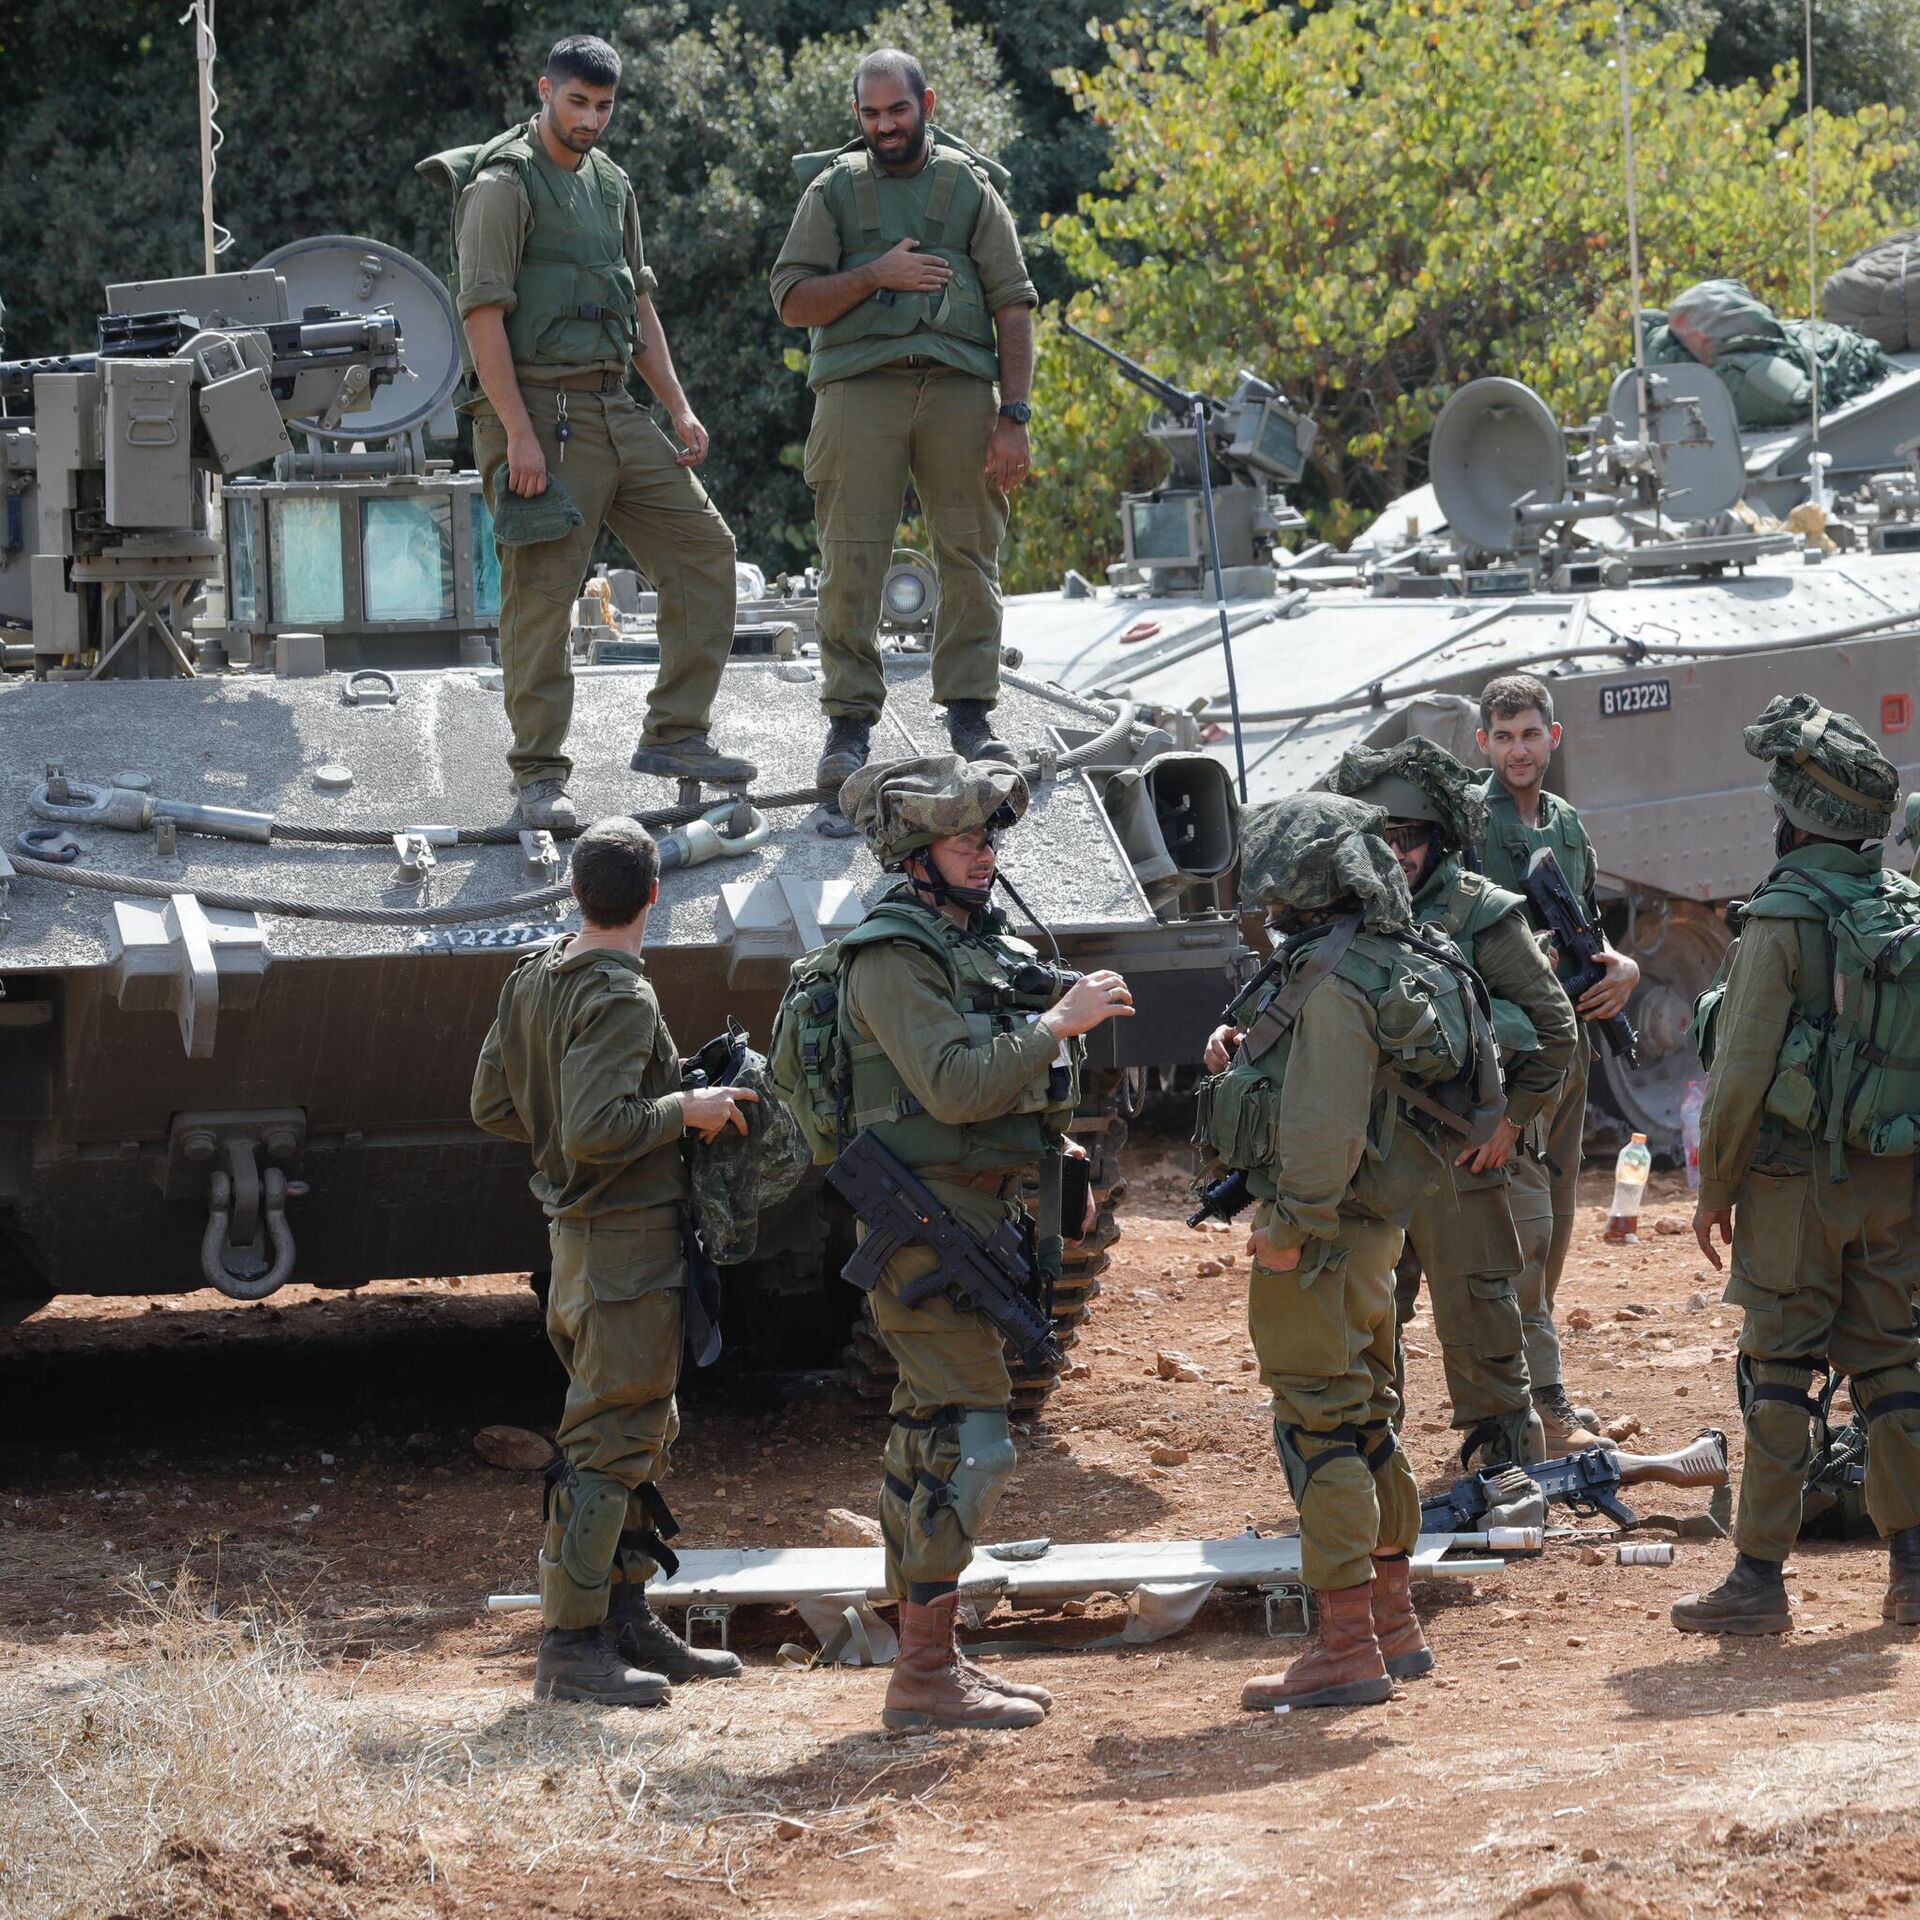 Israel Mendes - Sargento - Exército Brasileiro